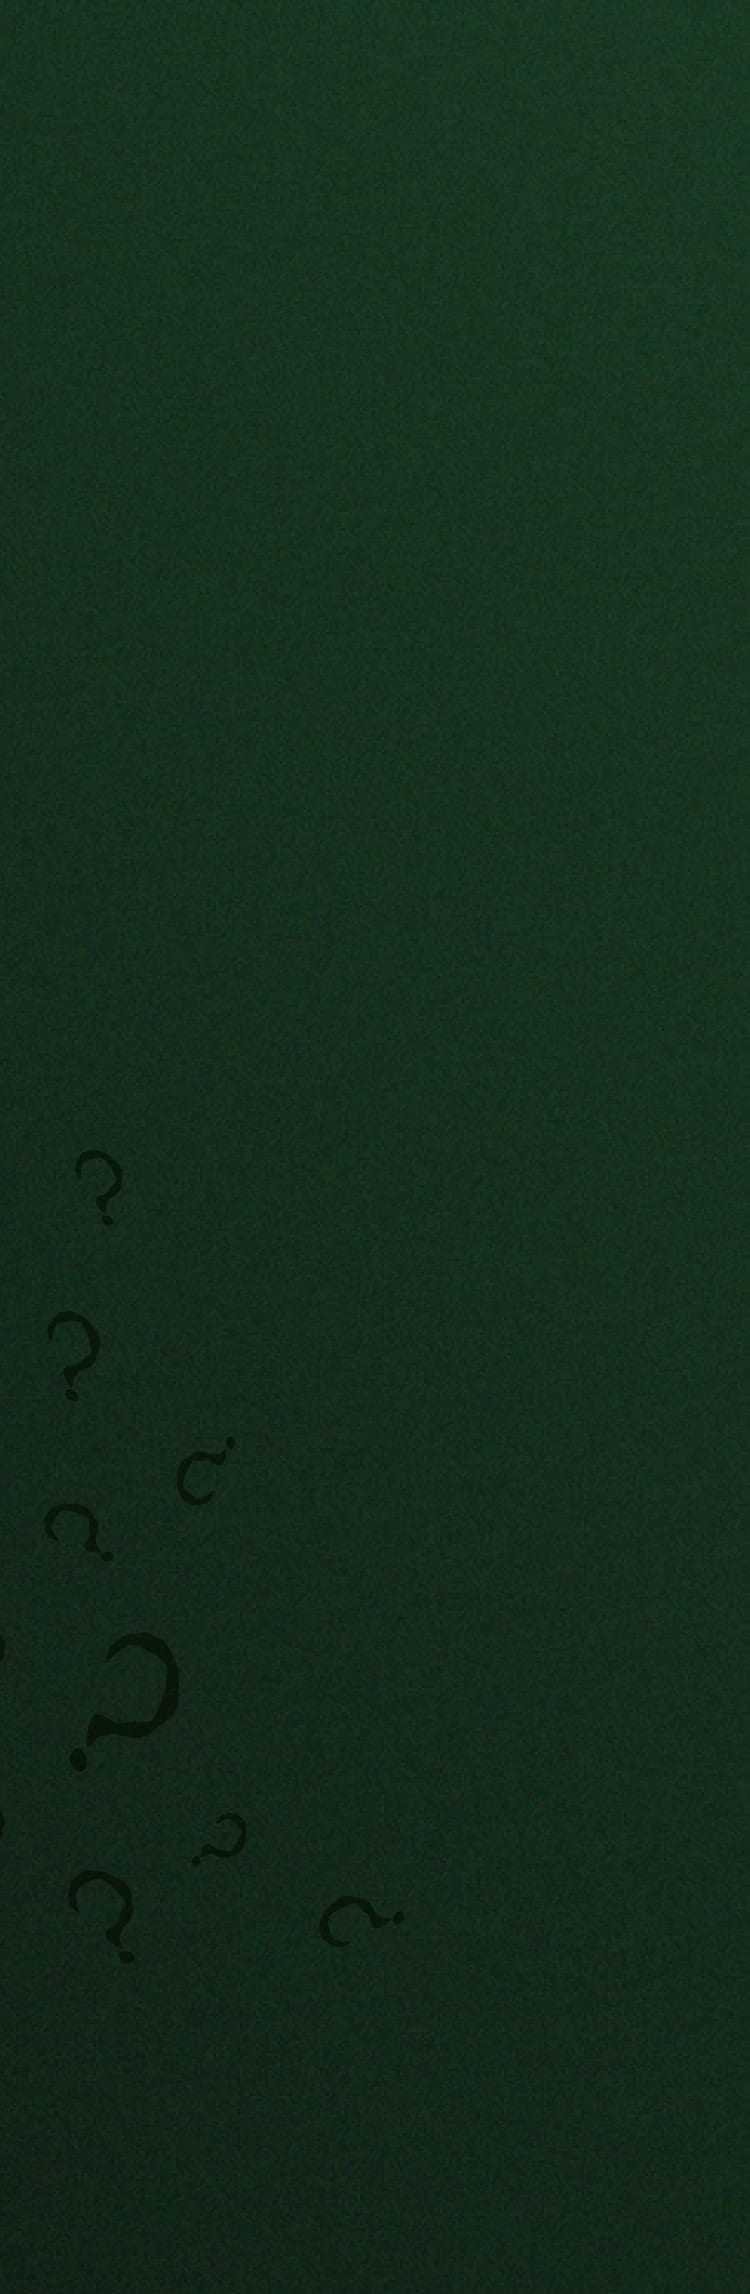 Grüner Hintergrund mit Fragezeichen und die The Batman x Fossil Riddler Uhr. 